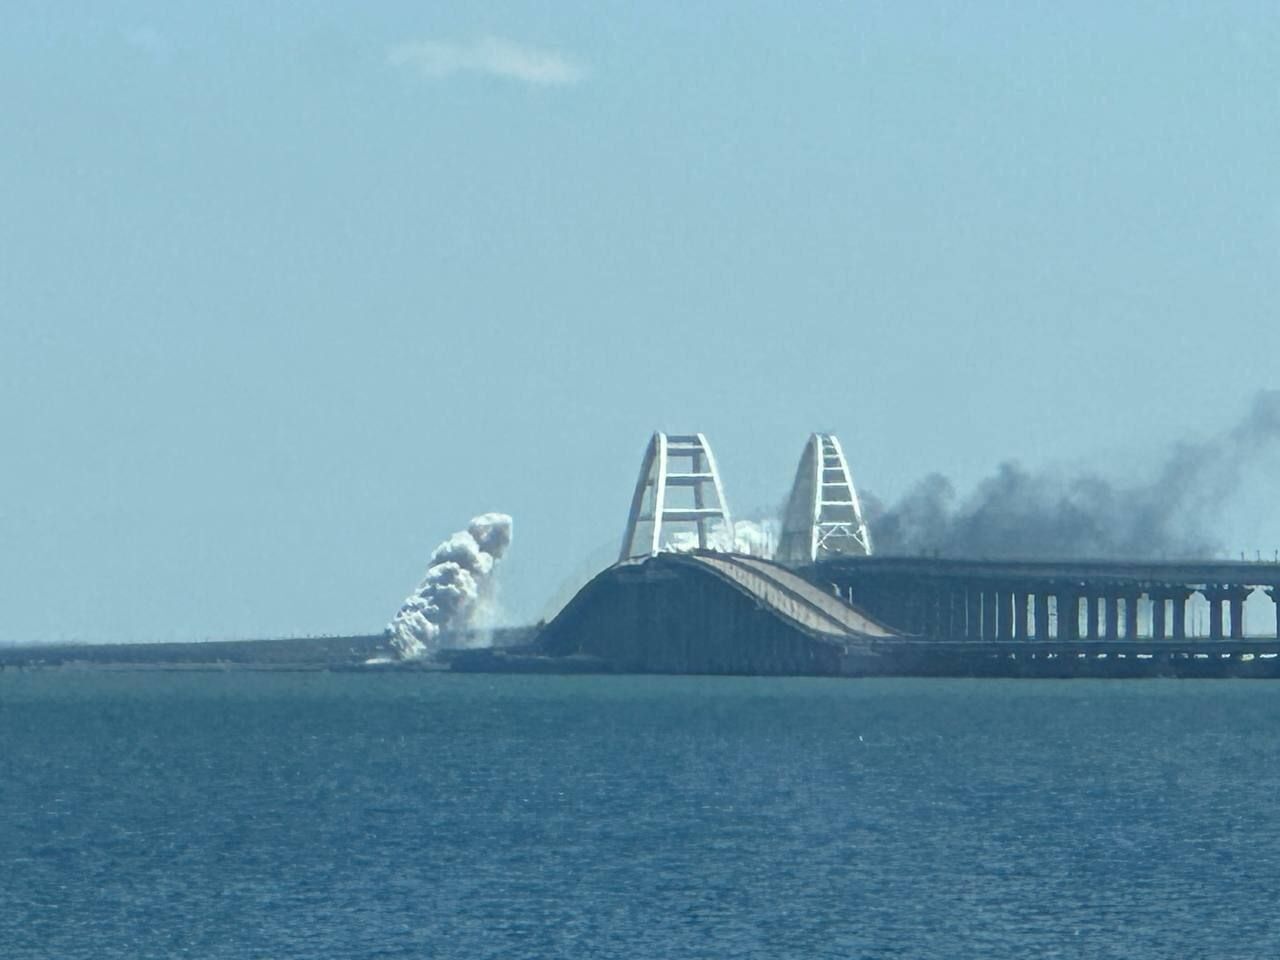 Игнат о взрывах на Крымском мосту: не просто так ведь они перекрывают